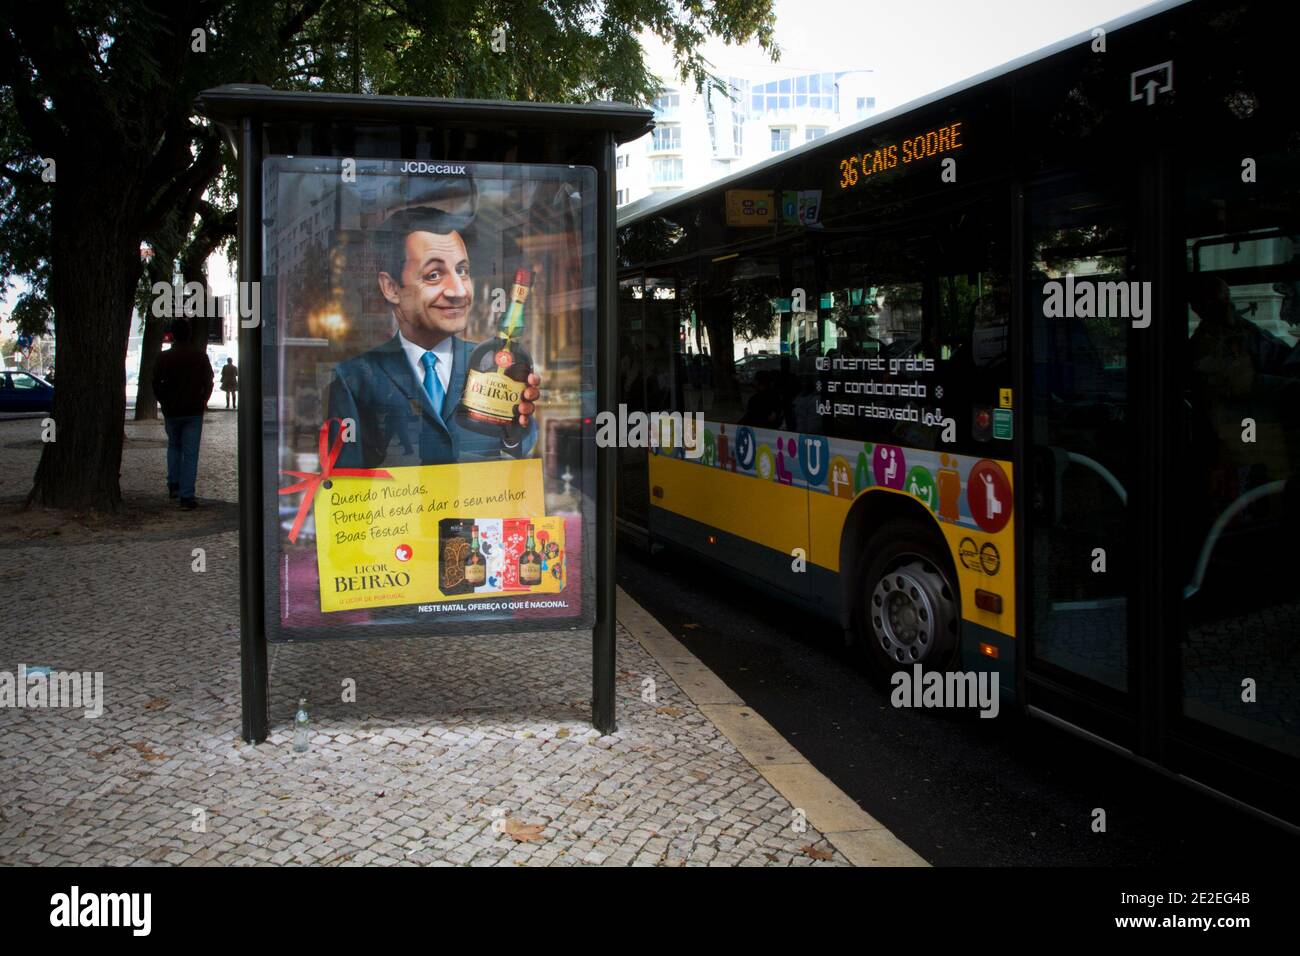 Muppie, im Zentrum von Lissabon, Portgal, am 6. Dezember 2011, einer Marketingkampagne eines portugiesischen Getränkeunternehmens Beirao mit dem französischen Präsidenten Nicolas Sarkozy. Auf dem Muppie ist 'Dear Nicolas, Portugal tut sein Bestes. Frohe Feiertage!“. Foto von Pedro Nunes/ABACAPRESS.COM Stockfoto